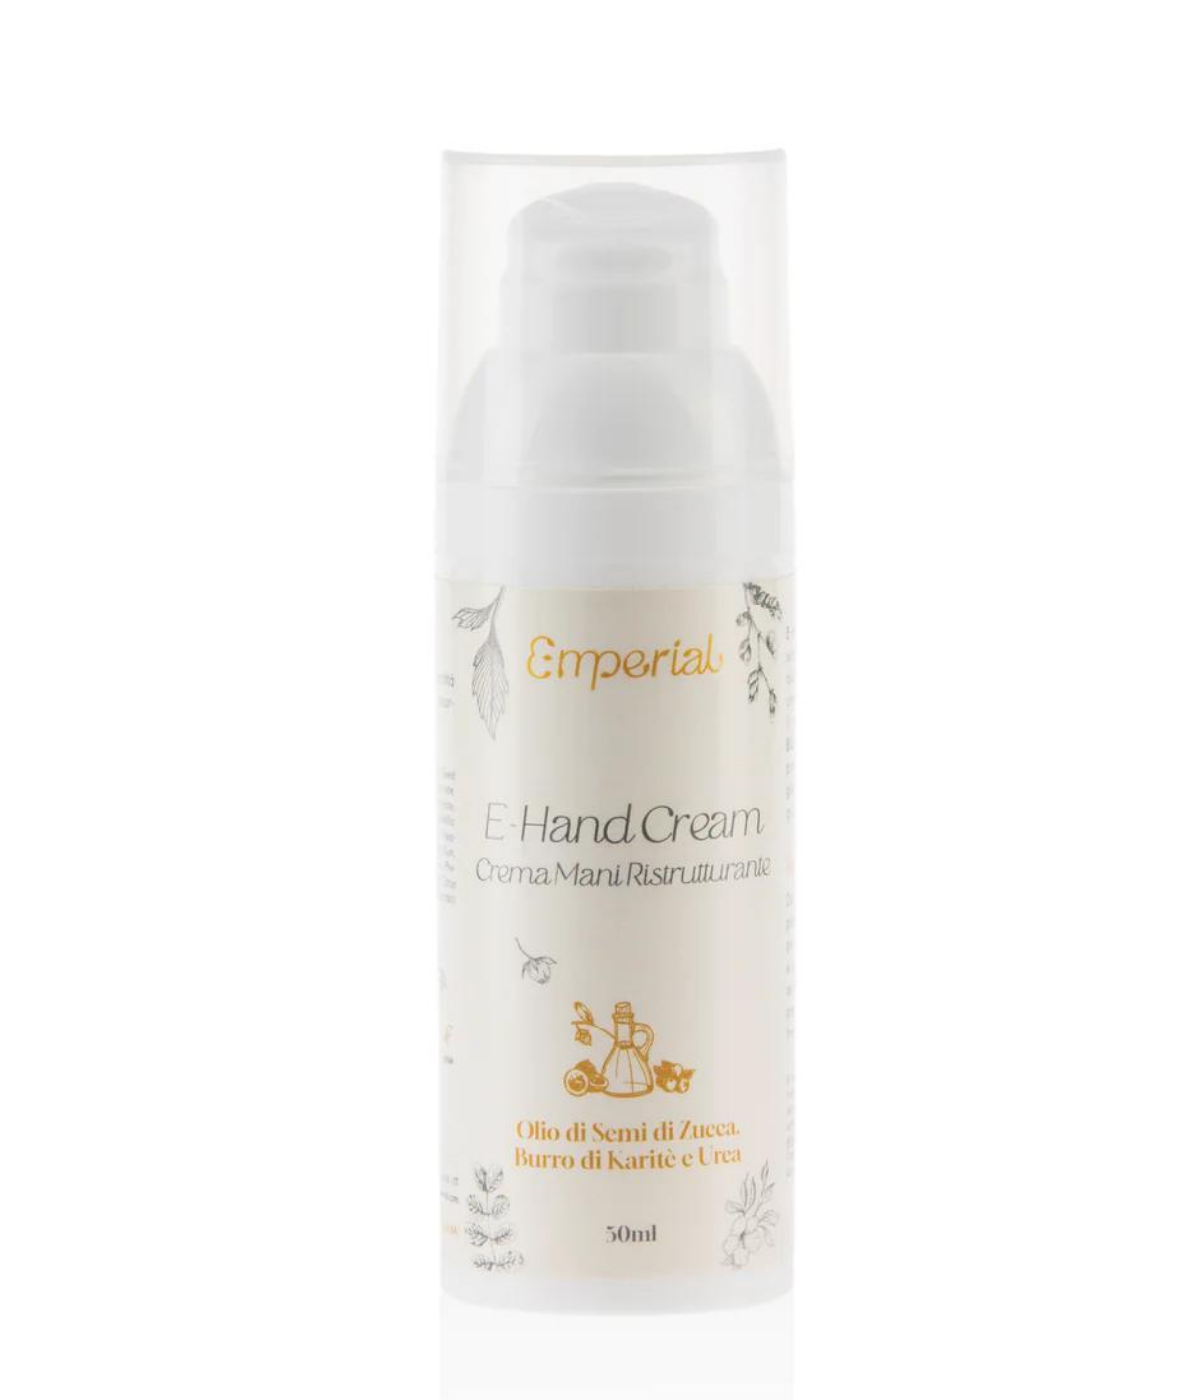 E-Hand Cream - Crema Mani Ristrutturante, Protettiva e Cicatrizzante